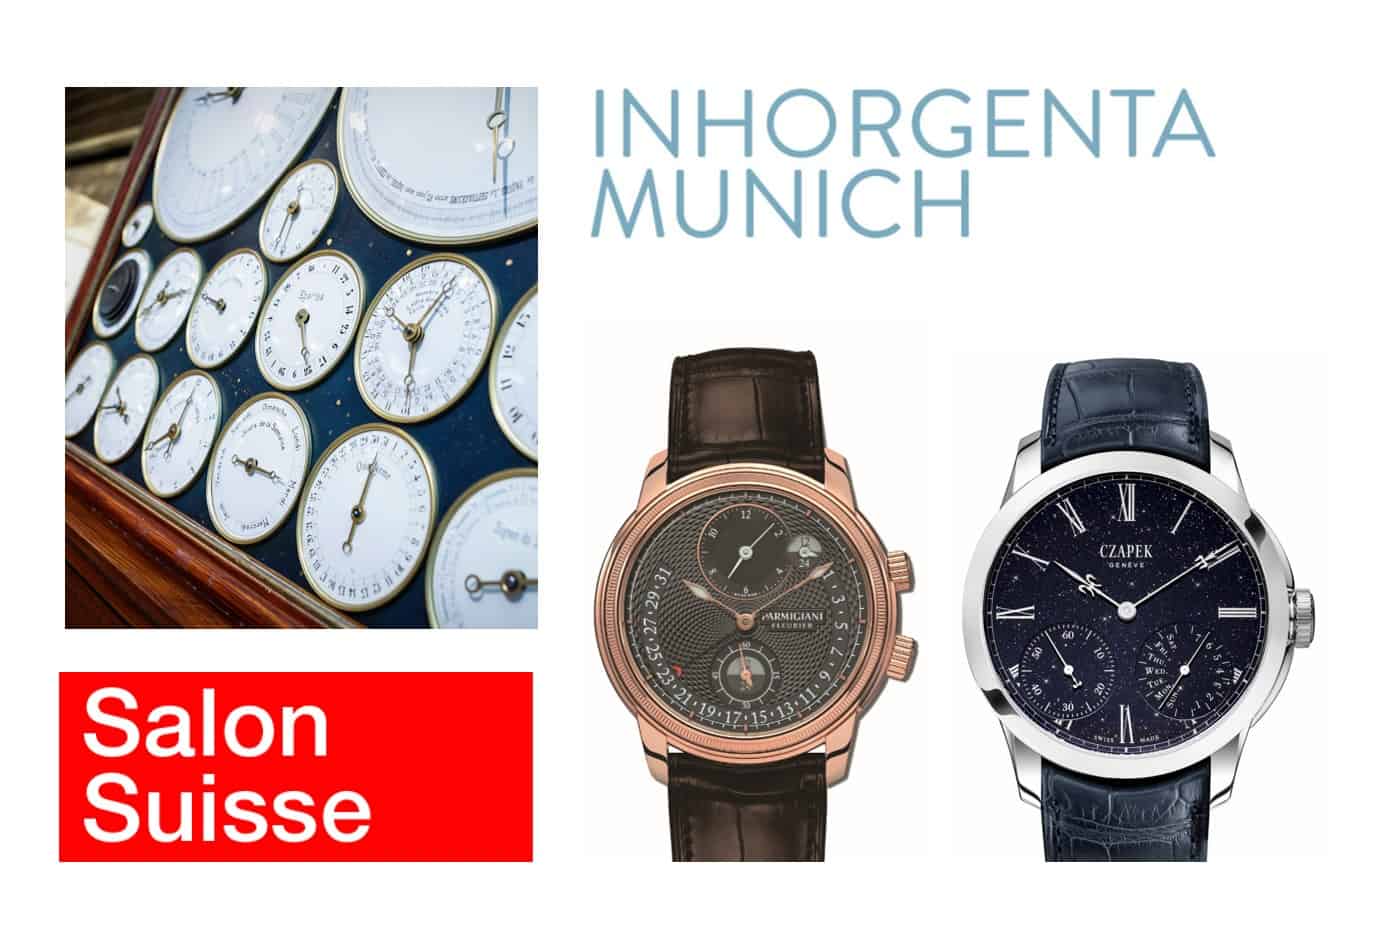 Schweizer Premium-Marken auf der Inhorgenta München 2020Parmigiani Fleurier, Czapek und Bumont schmücken den Inhorgenta Salon Suisse